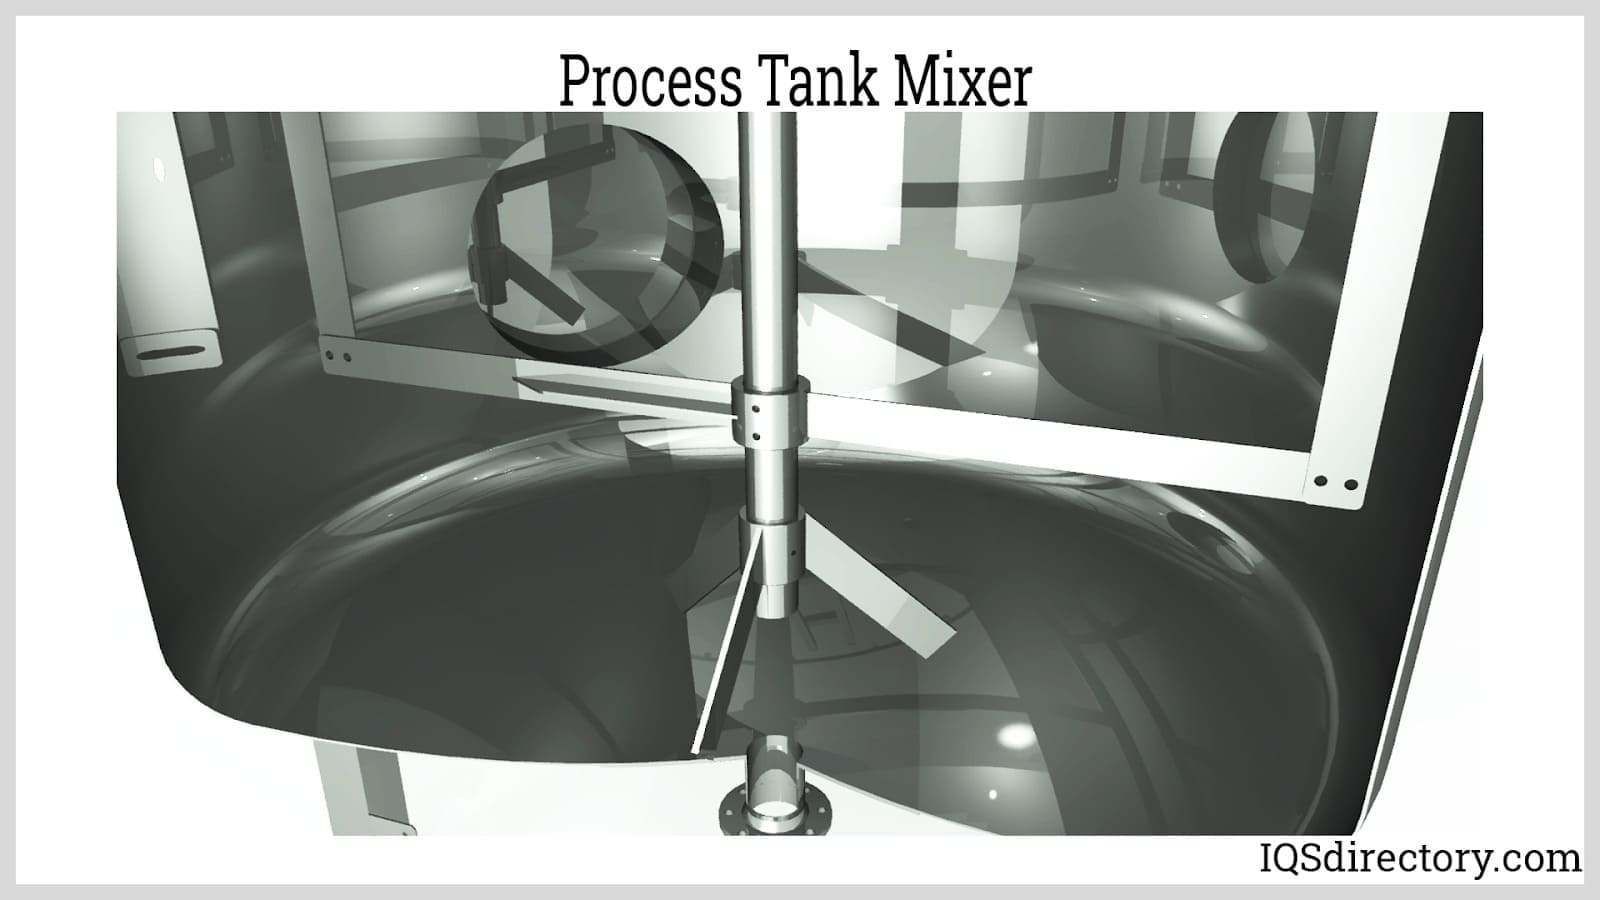 Process Tank Mixer